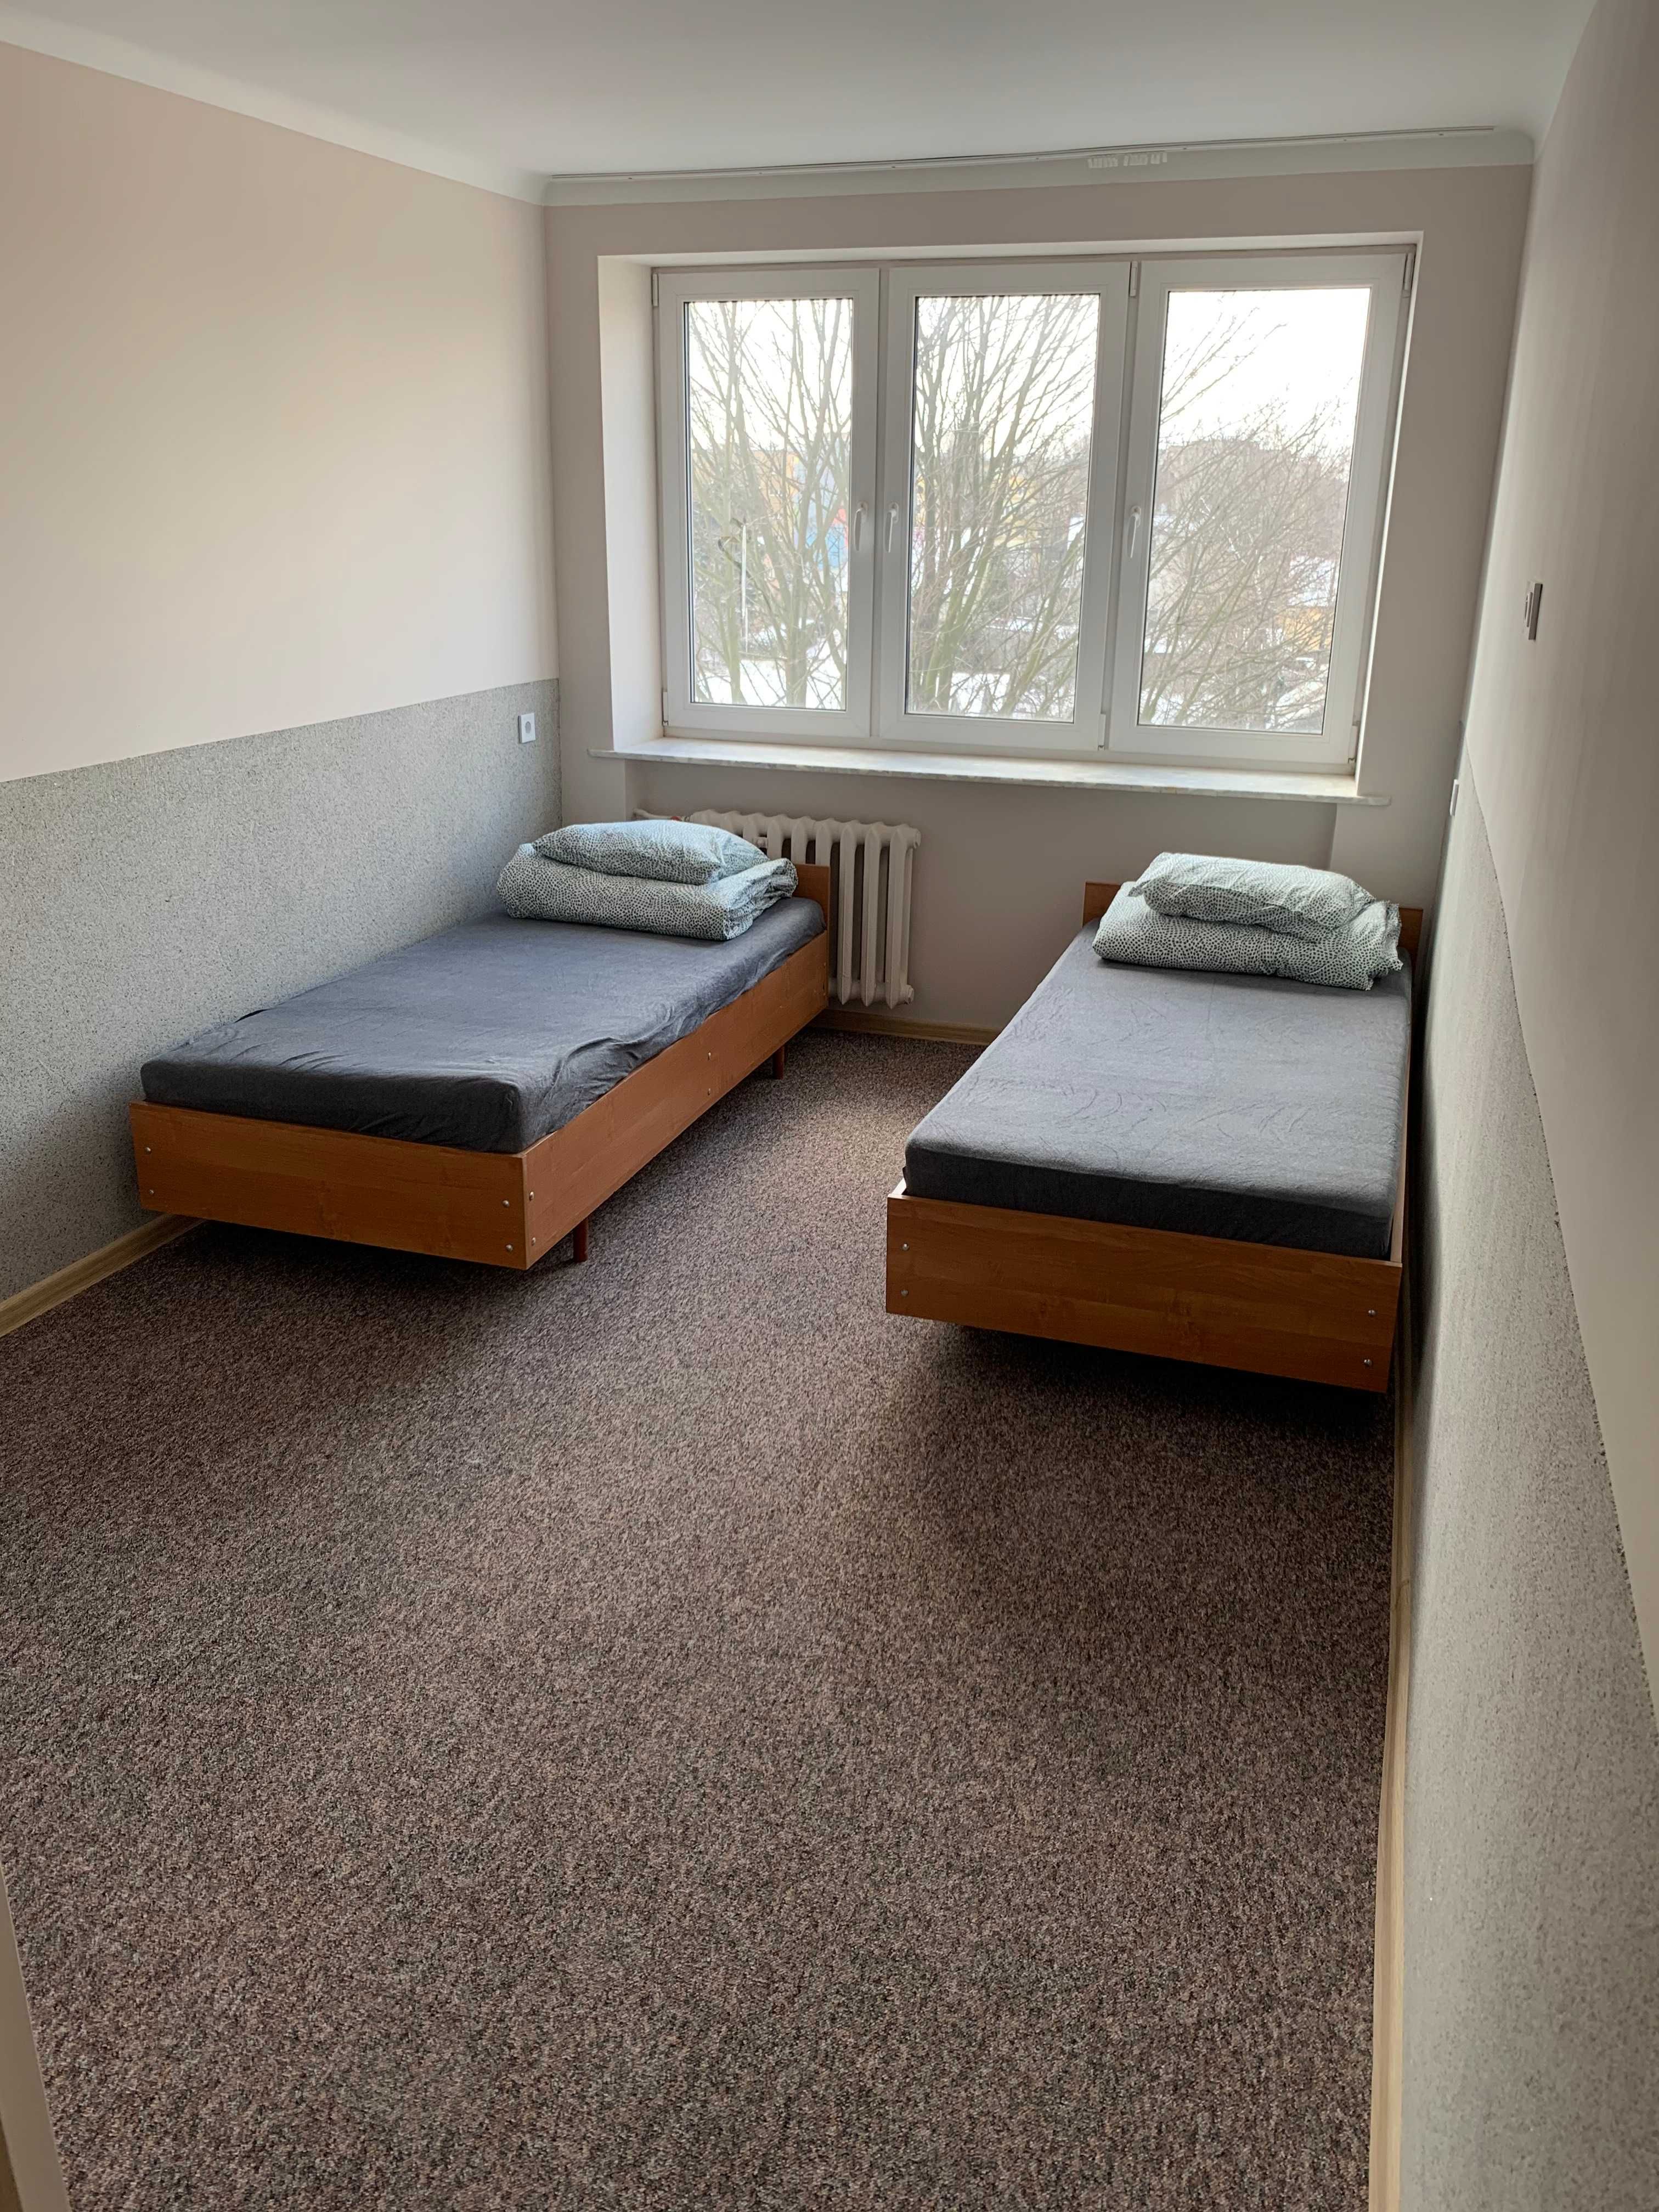 Noclegi, pokoje 1-2 osobowe z łazienkami Skierniewice Centrum - FV